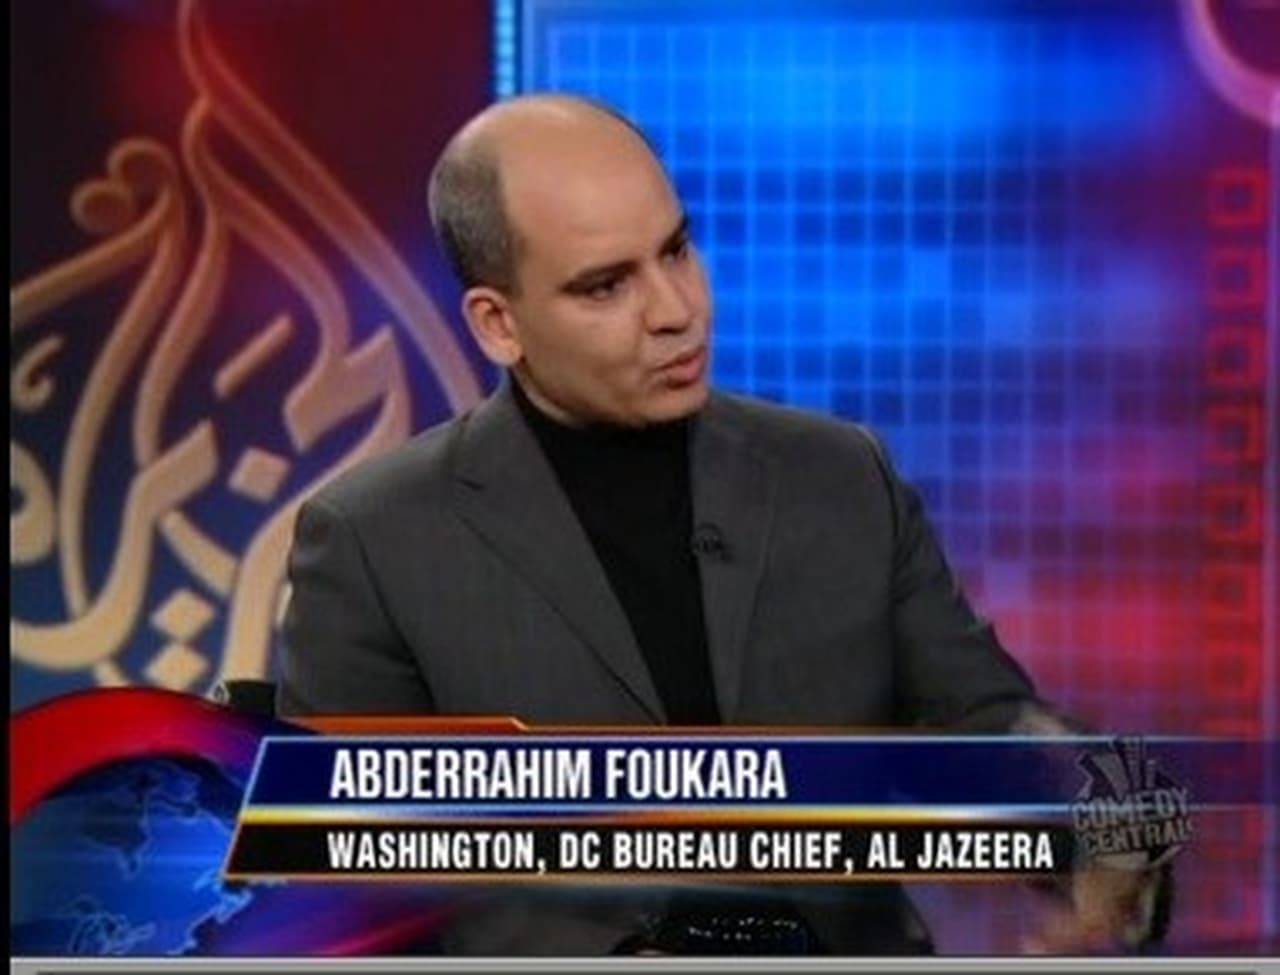 The Daily Show - Season 14 Episode 9 : Abderrahim Foukara